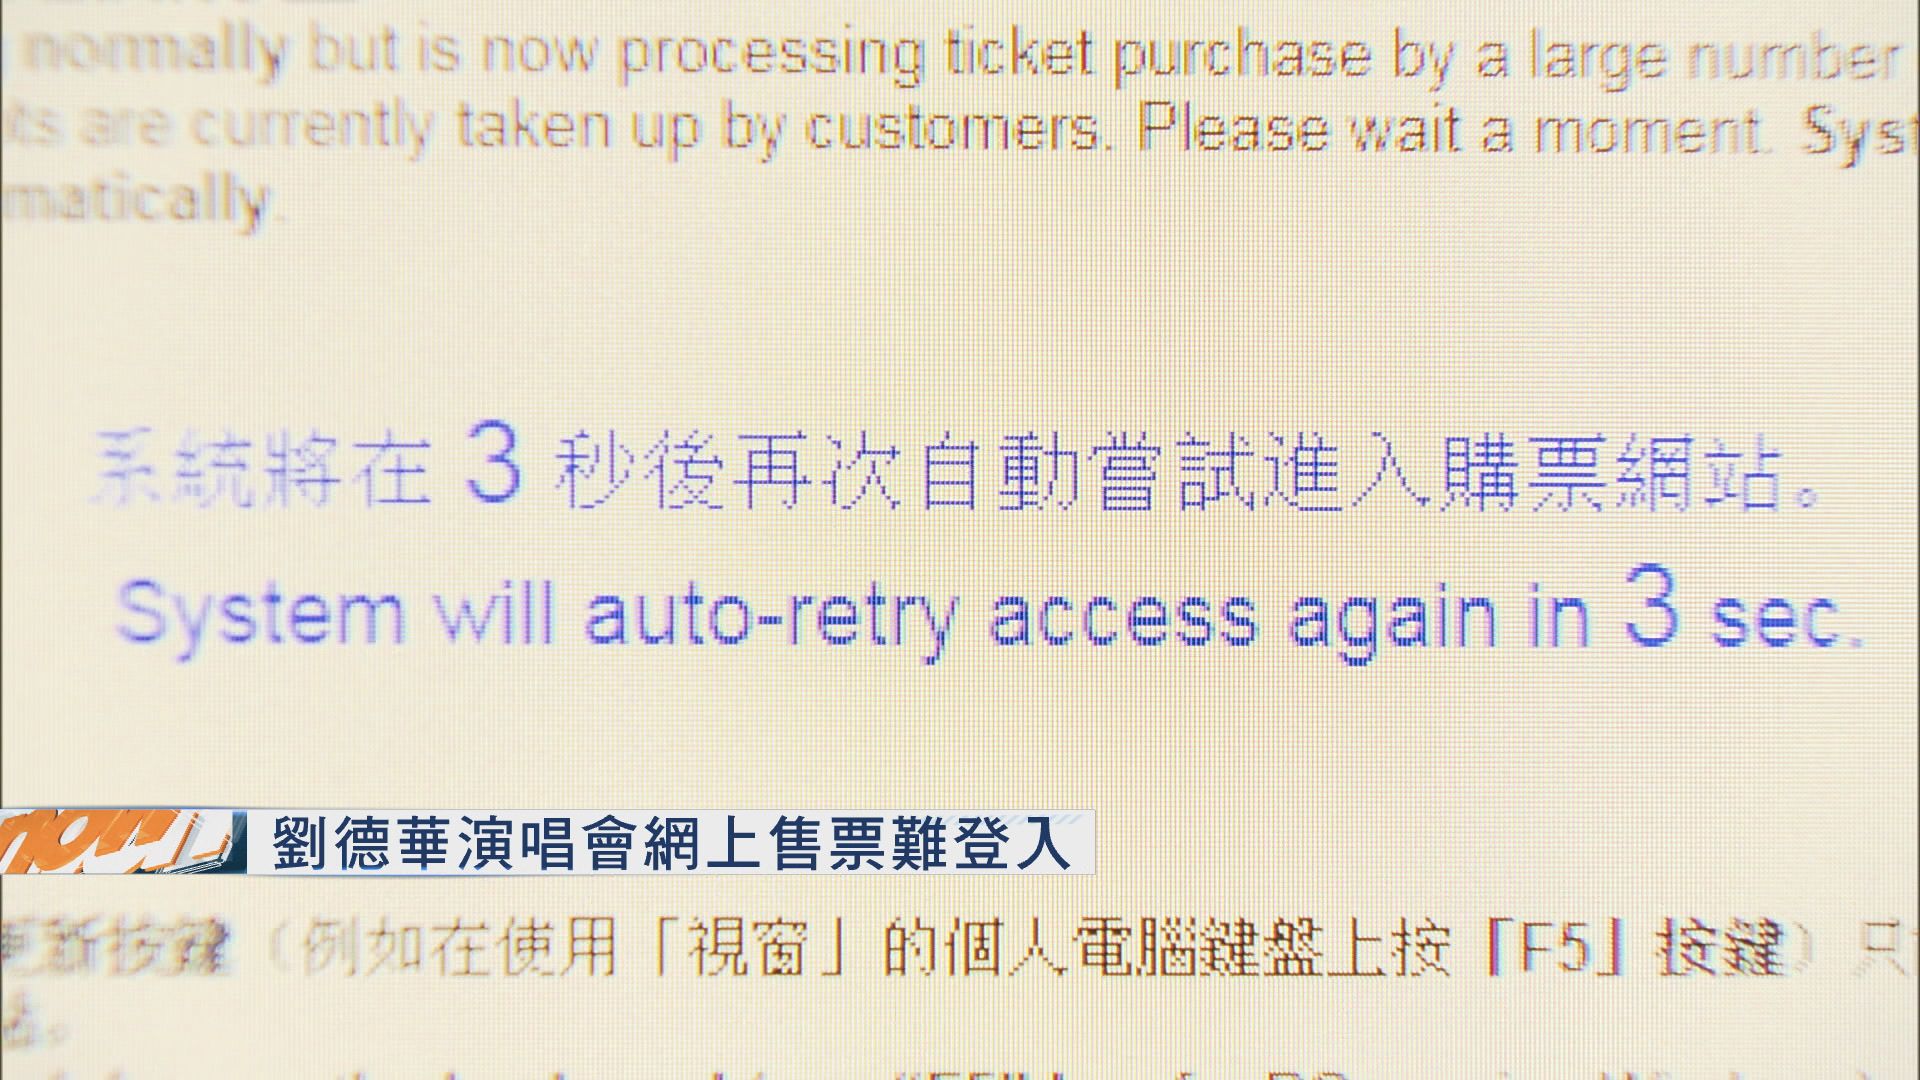 劉德華演唱會網上售票難登入